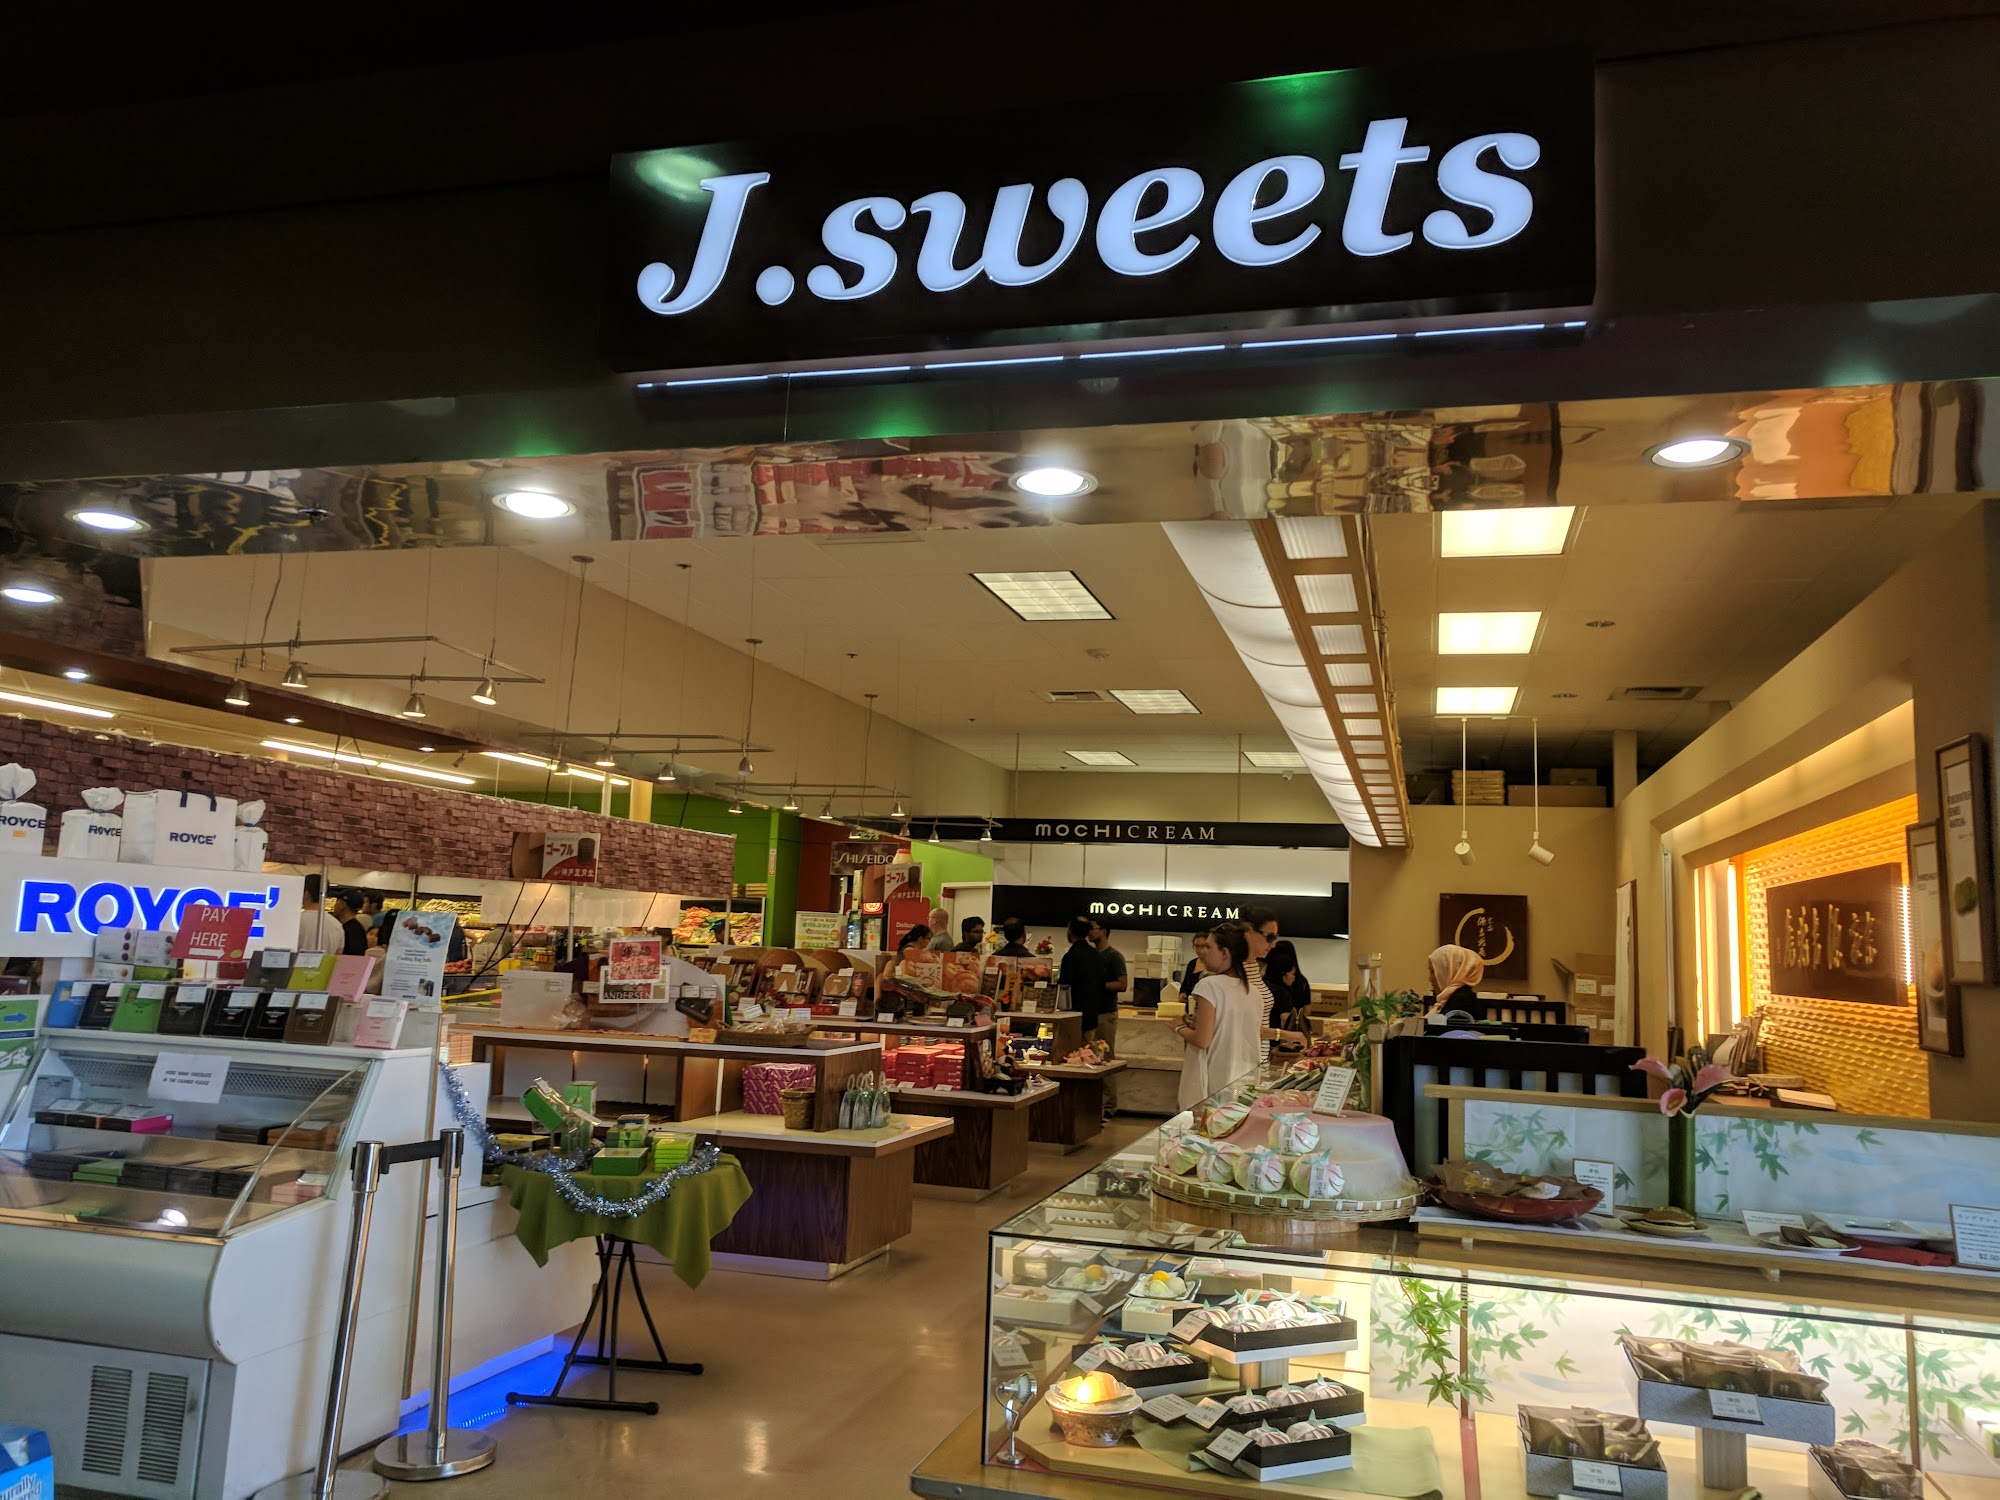 J.sweets